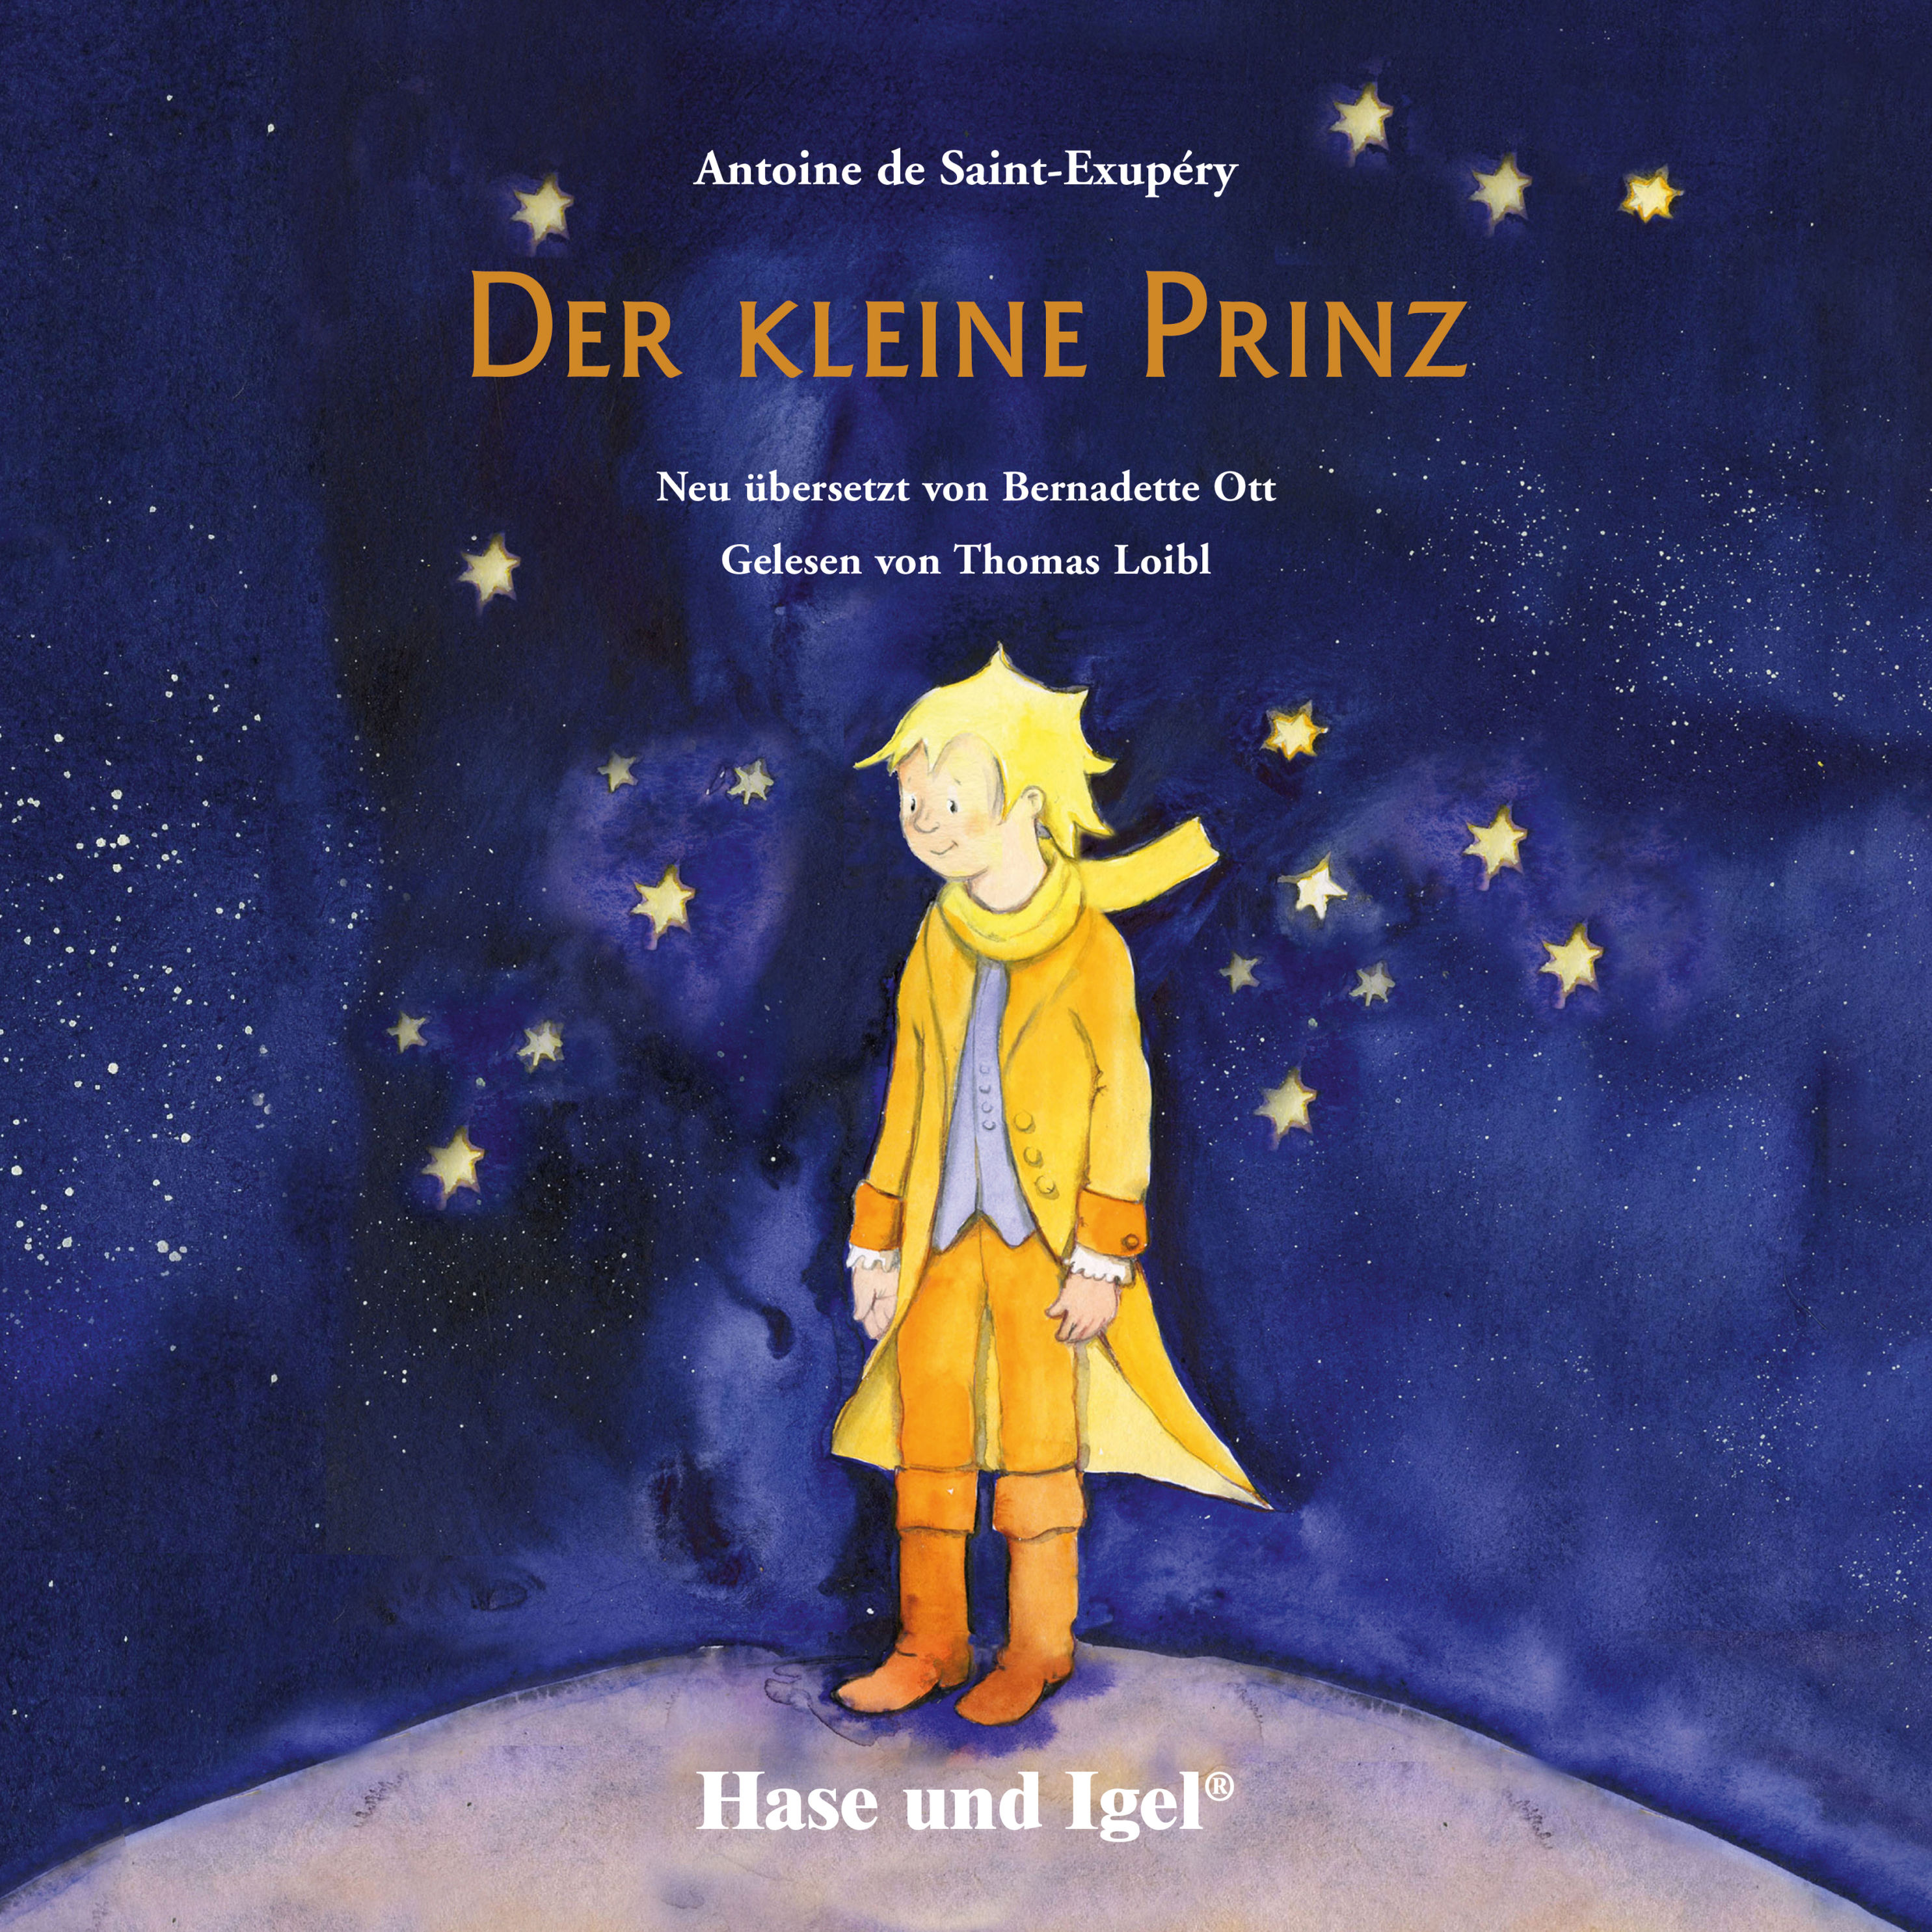 Der kleine Prinz Hörbuch Hörbuch downloaden bei Weltbild.de